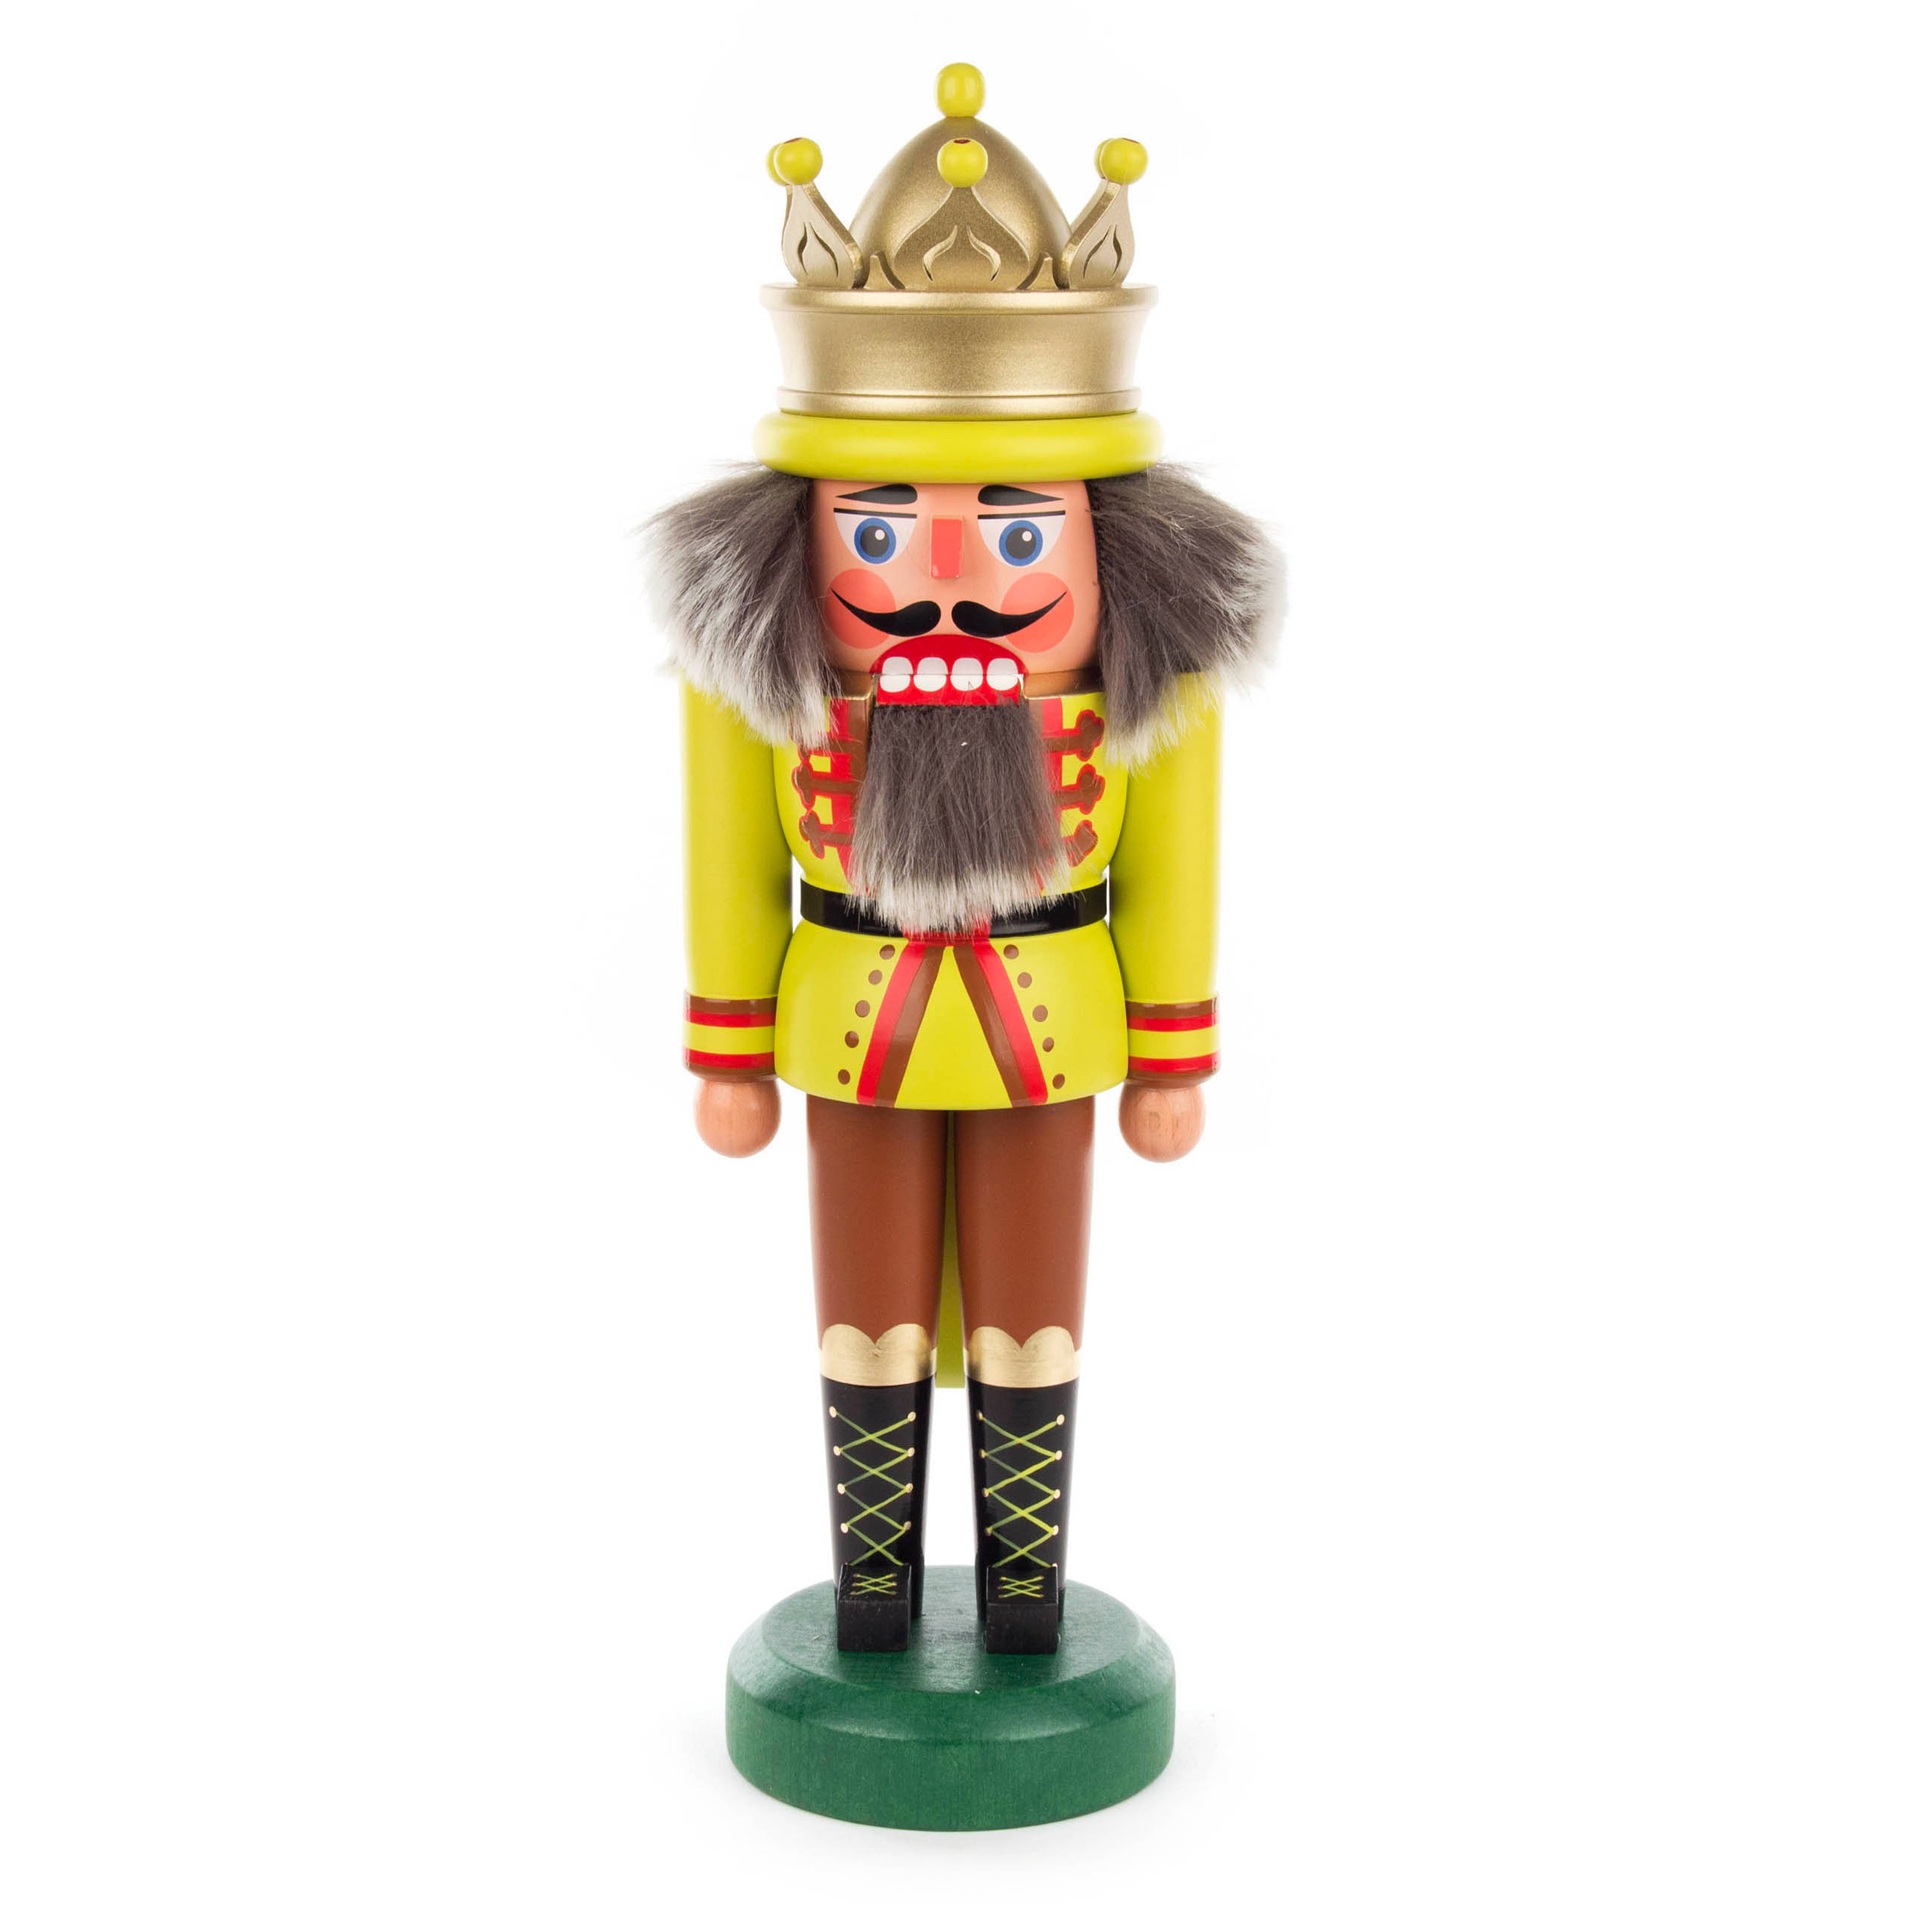 Nussknacker König mit Krone gelb/grün, 30cm